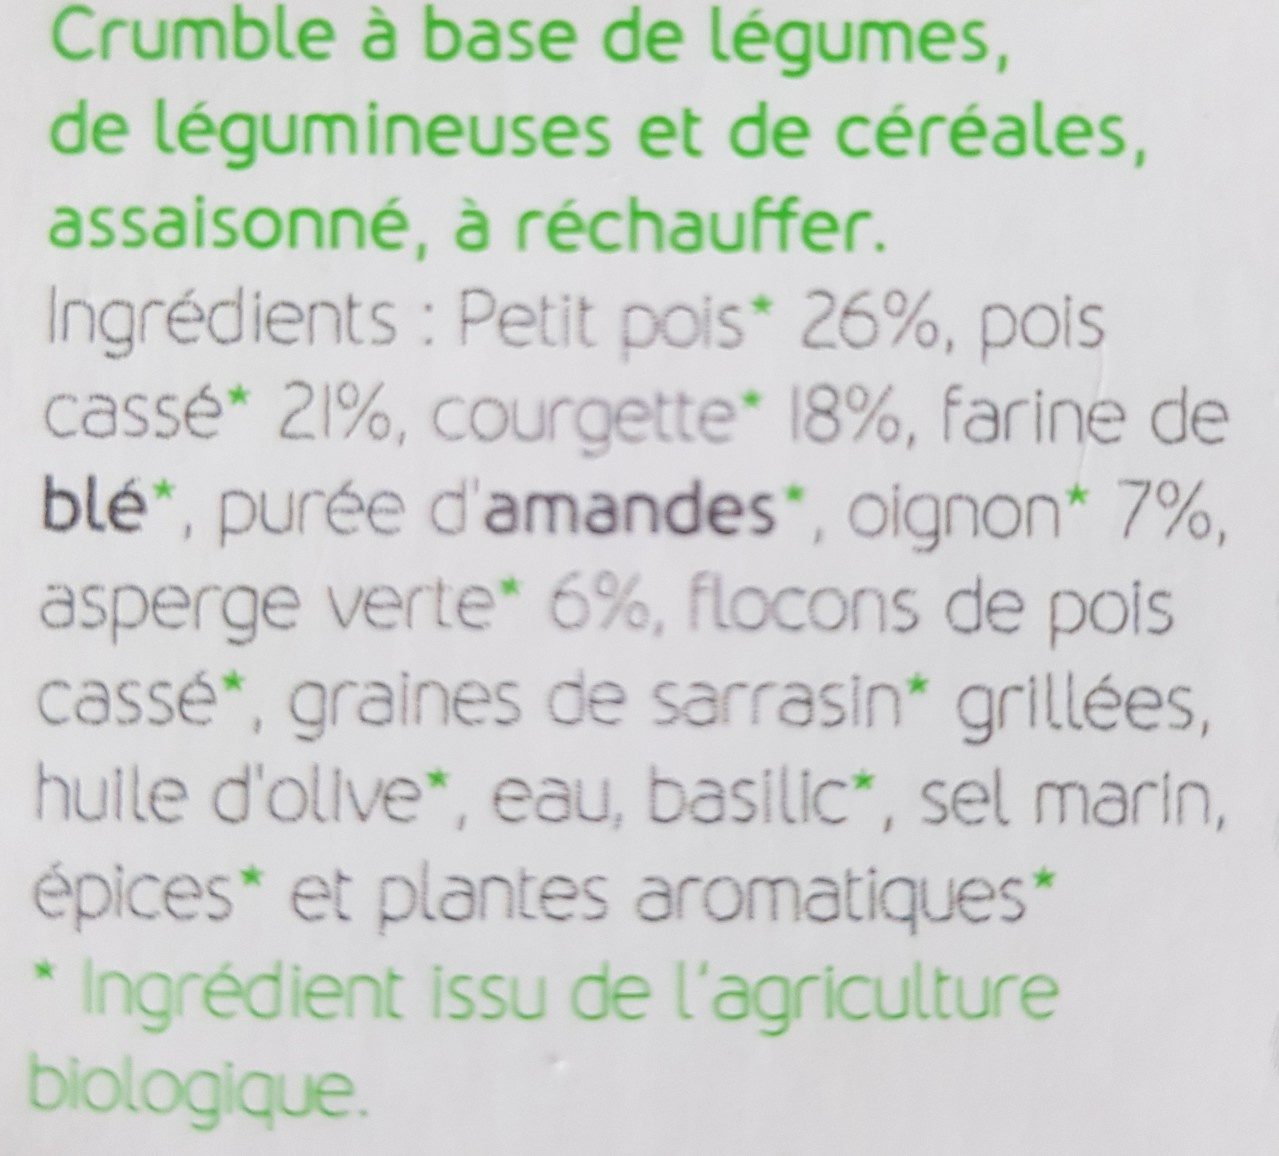 Crumble de saison - Ingrediënten - fr